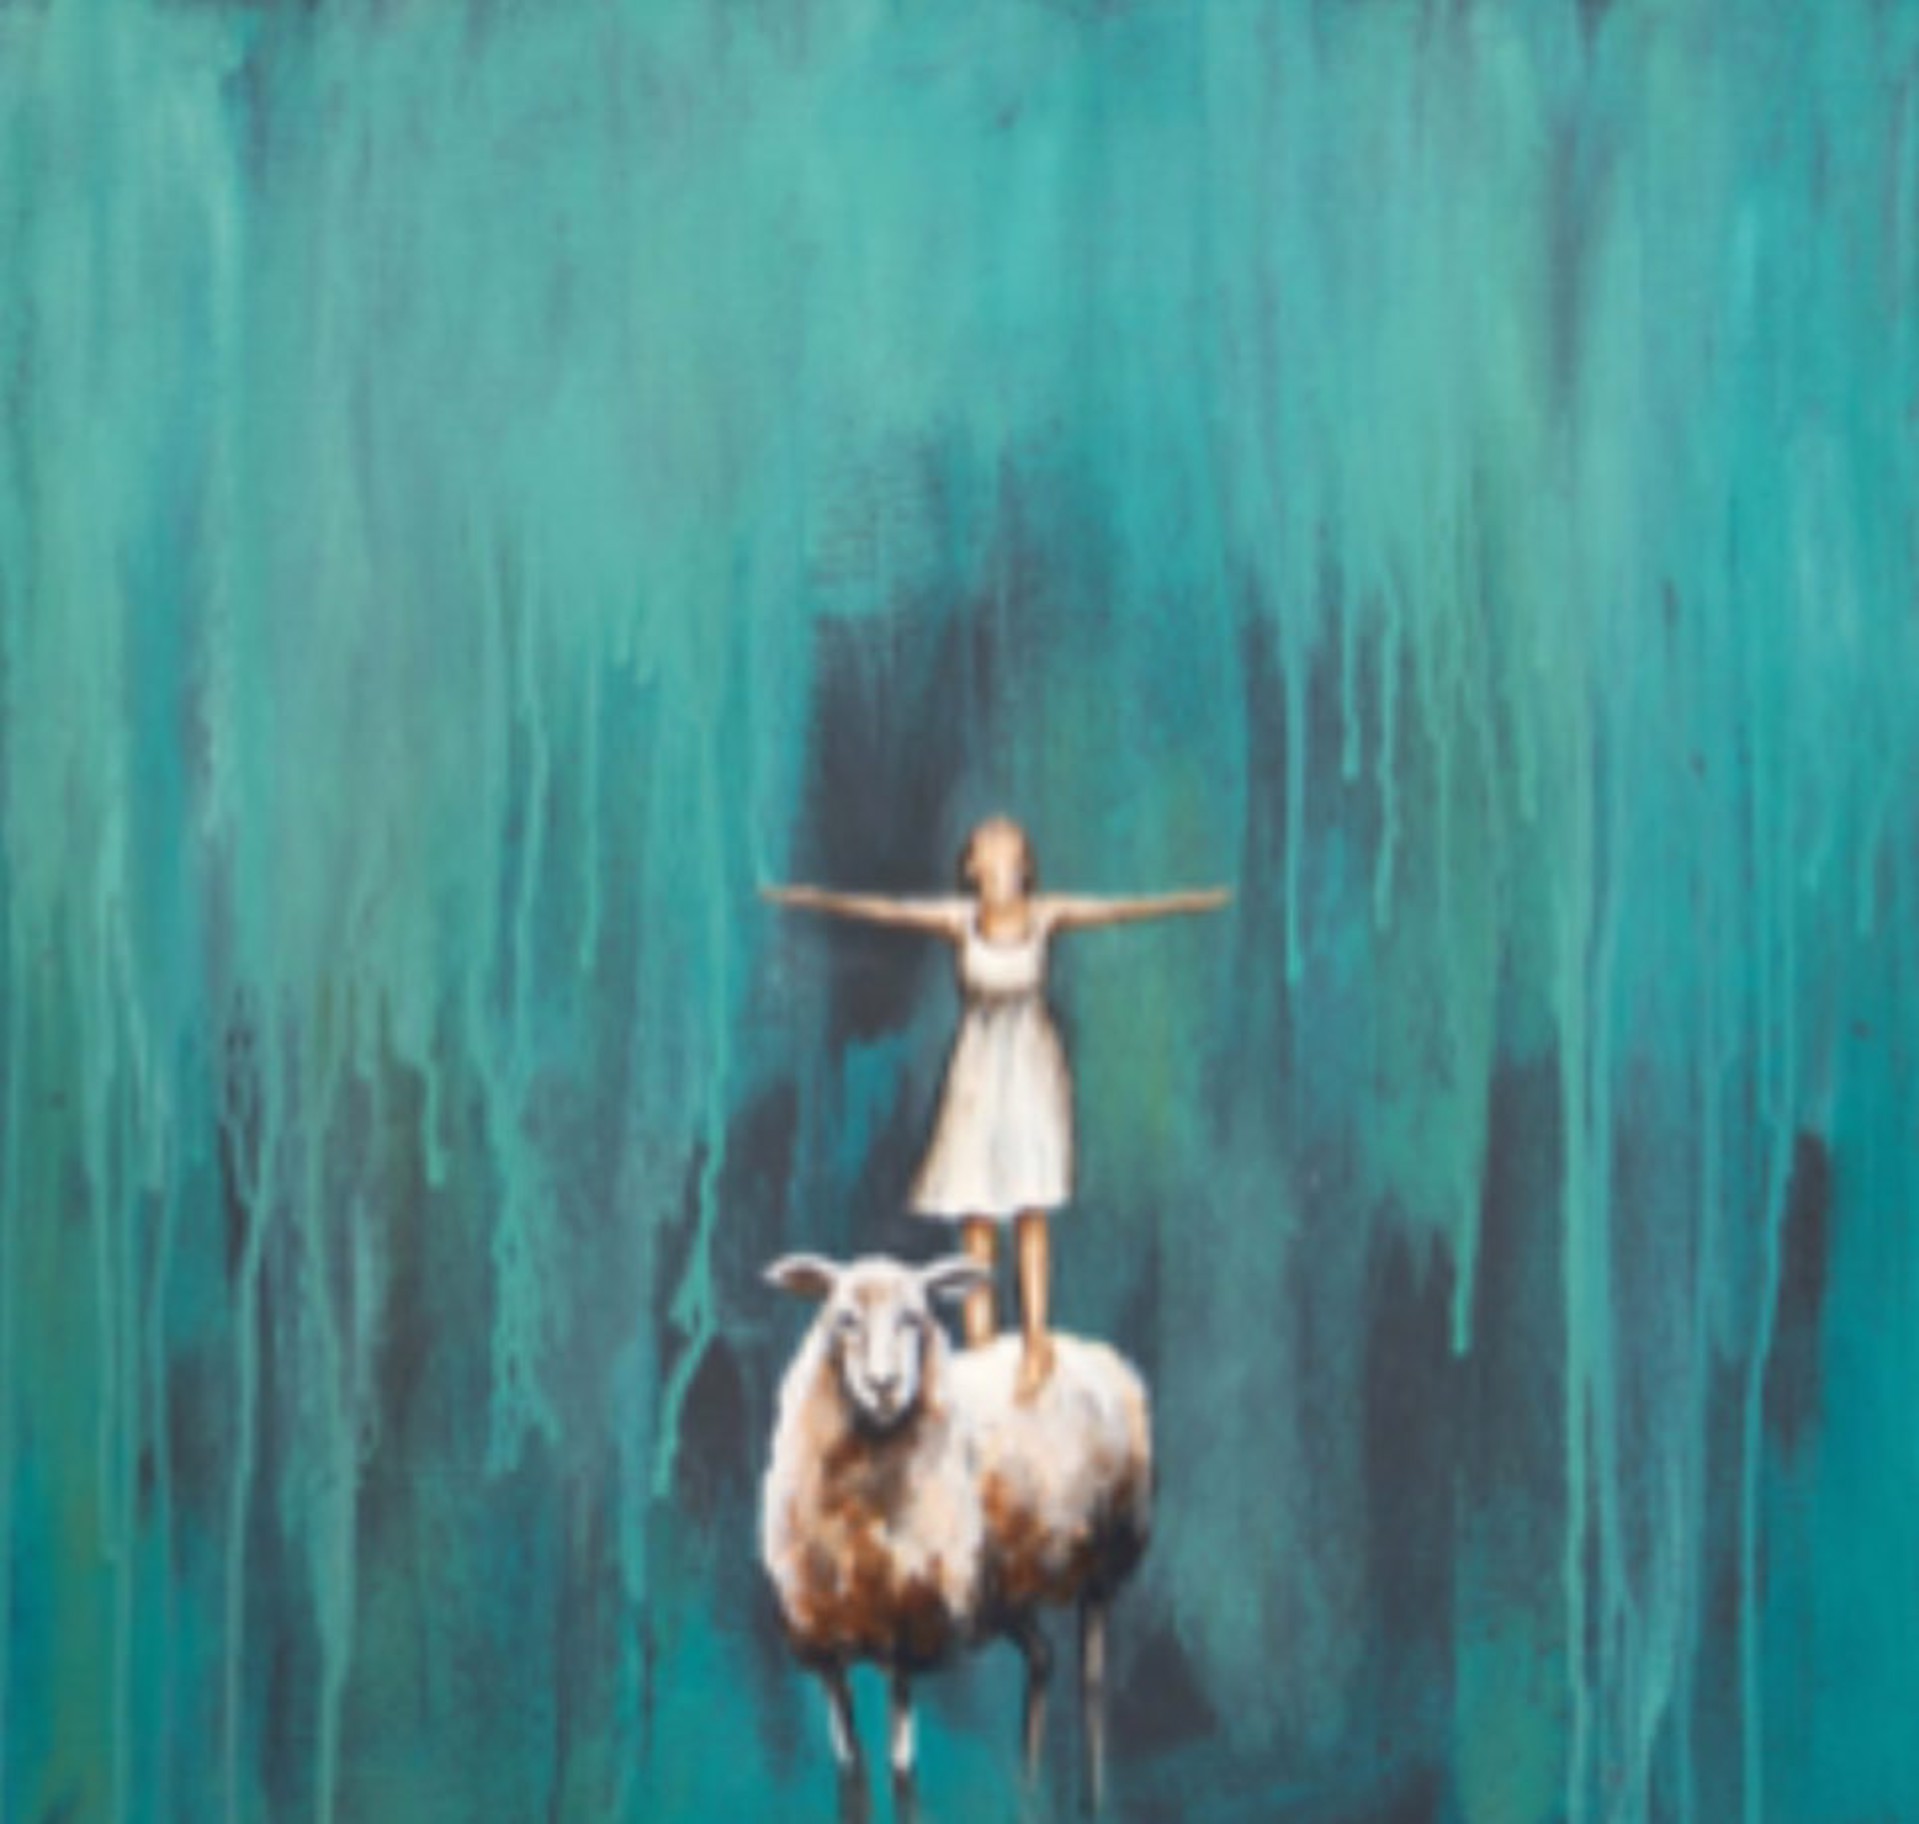 Balancing on the Lamb by Laura Bowman